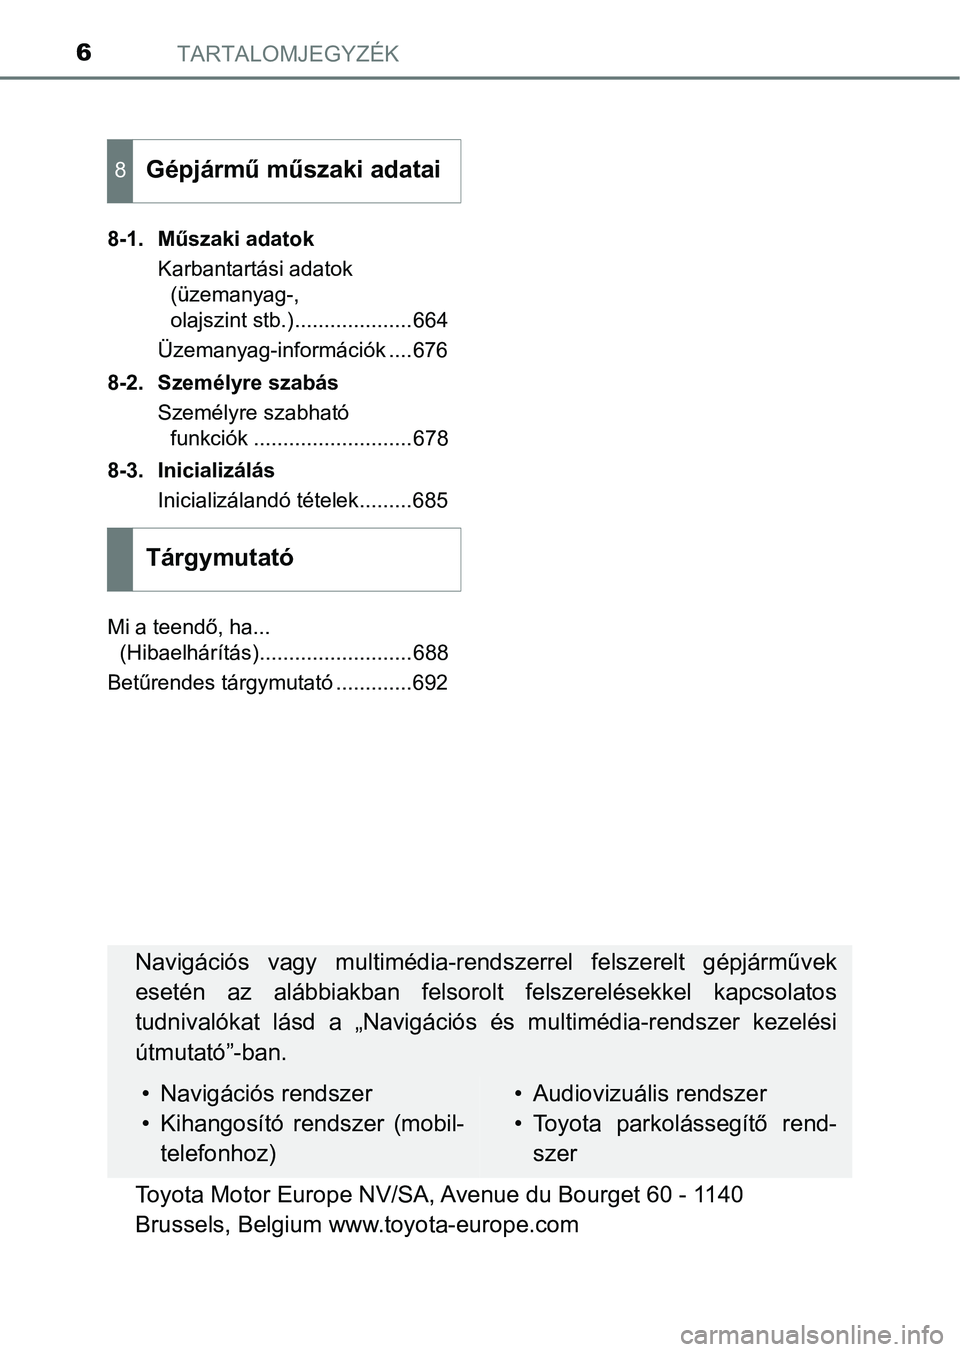 TOYOTA PRIUS 2017  Kezelési útmutató (in Hungarian) TARTALOMJEGYZÉK6
8-1. Műszaki adatokKarbantartási adatok (üzemanyag-, 
olajszint stb.)....................664
Üzemanyag-információk ....676
8-2. Személyre szabás Személyre szabható funkció